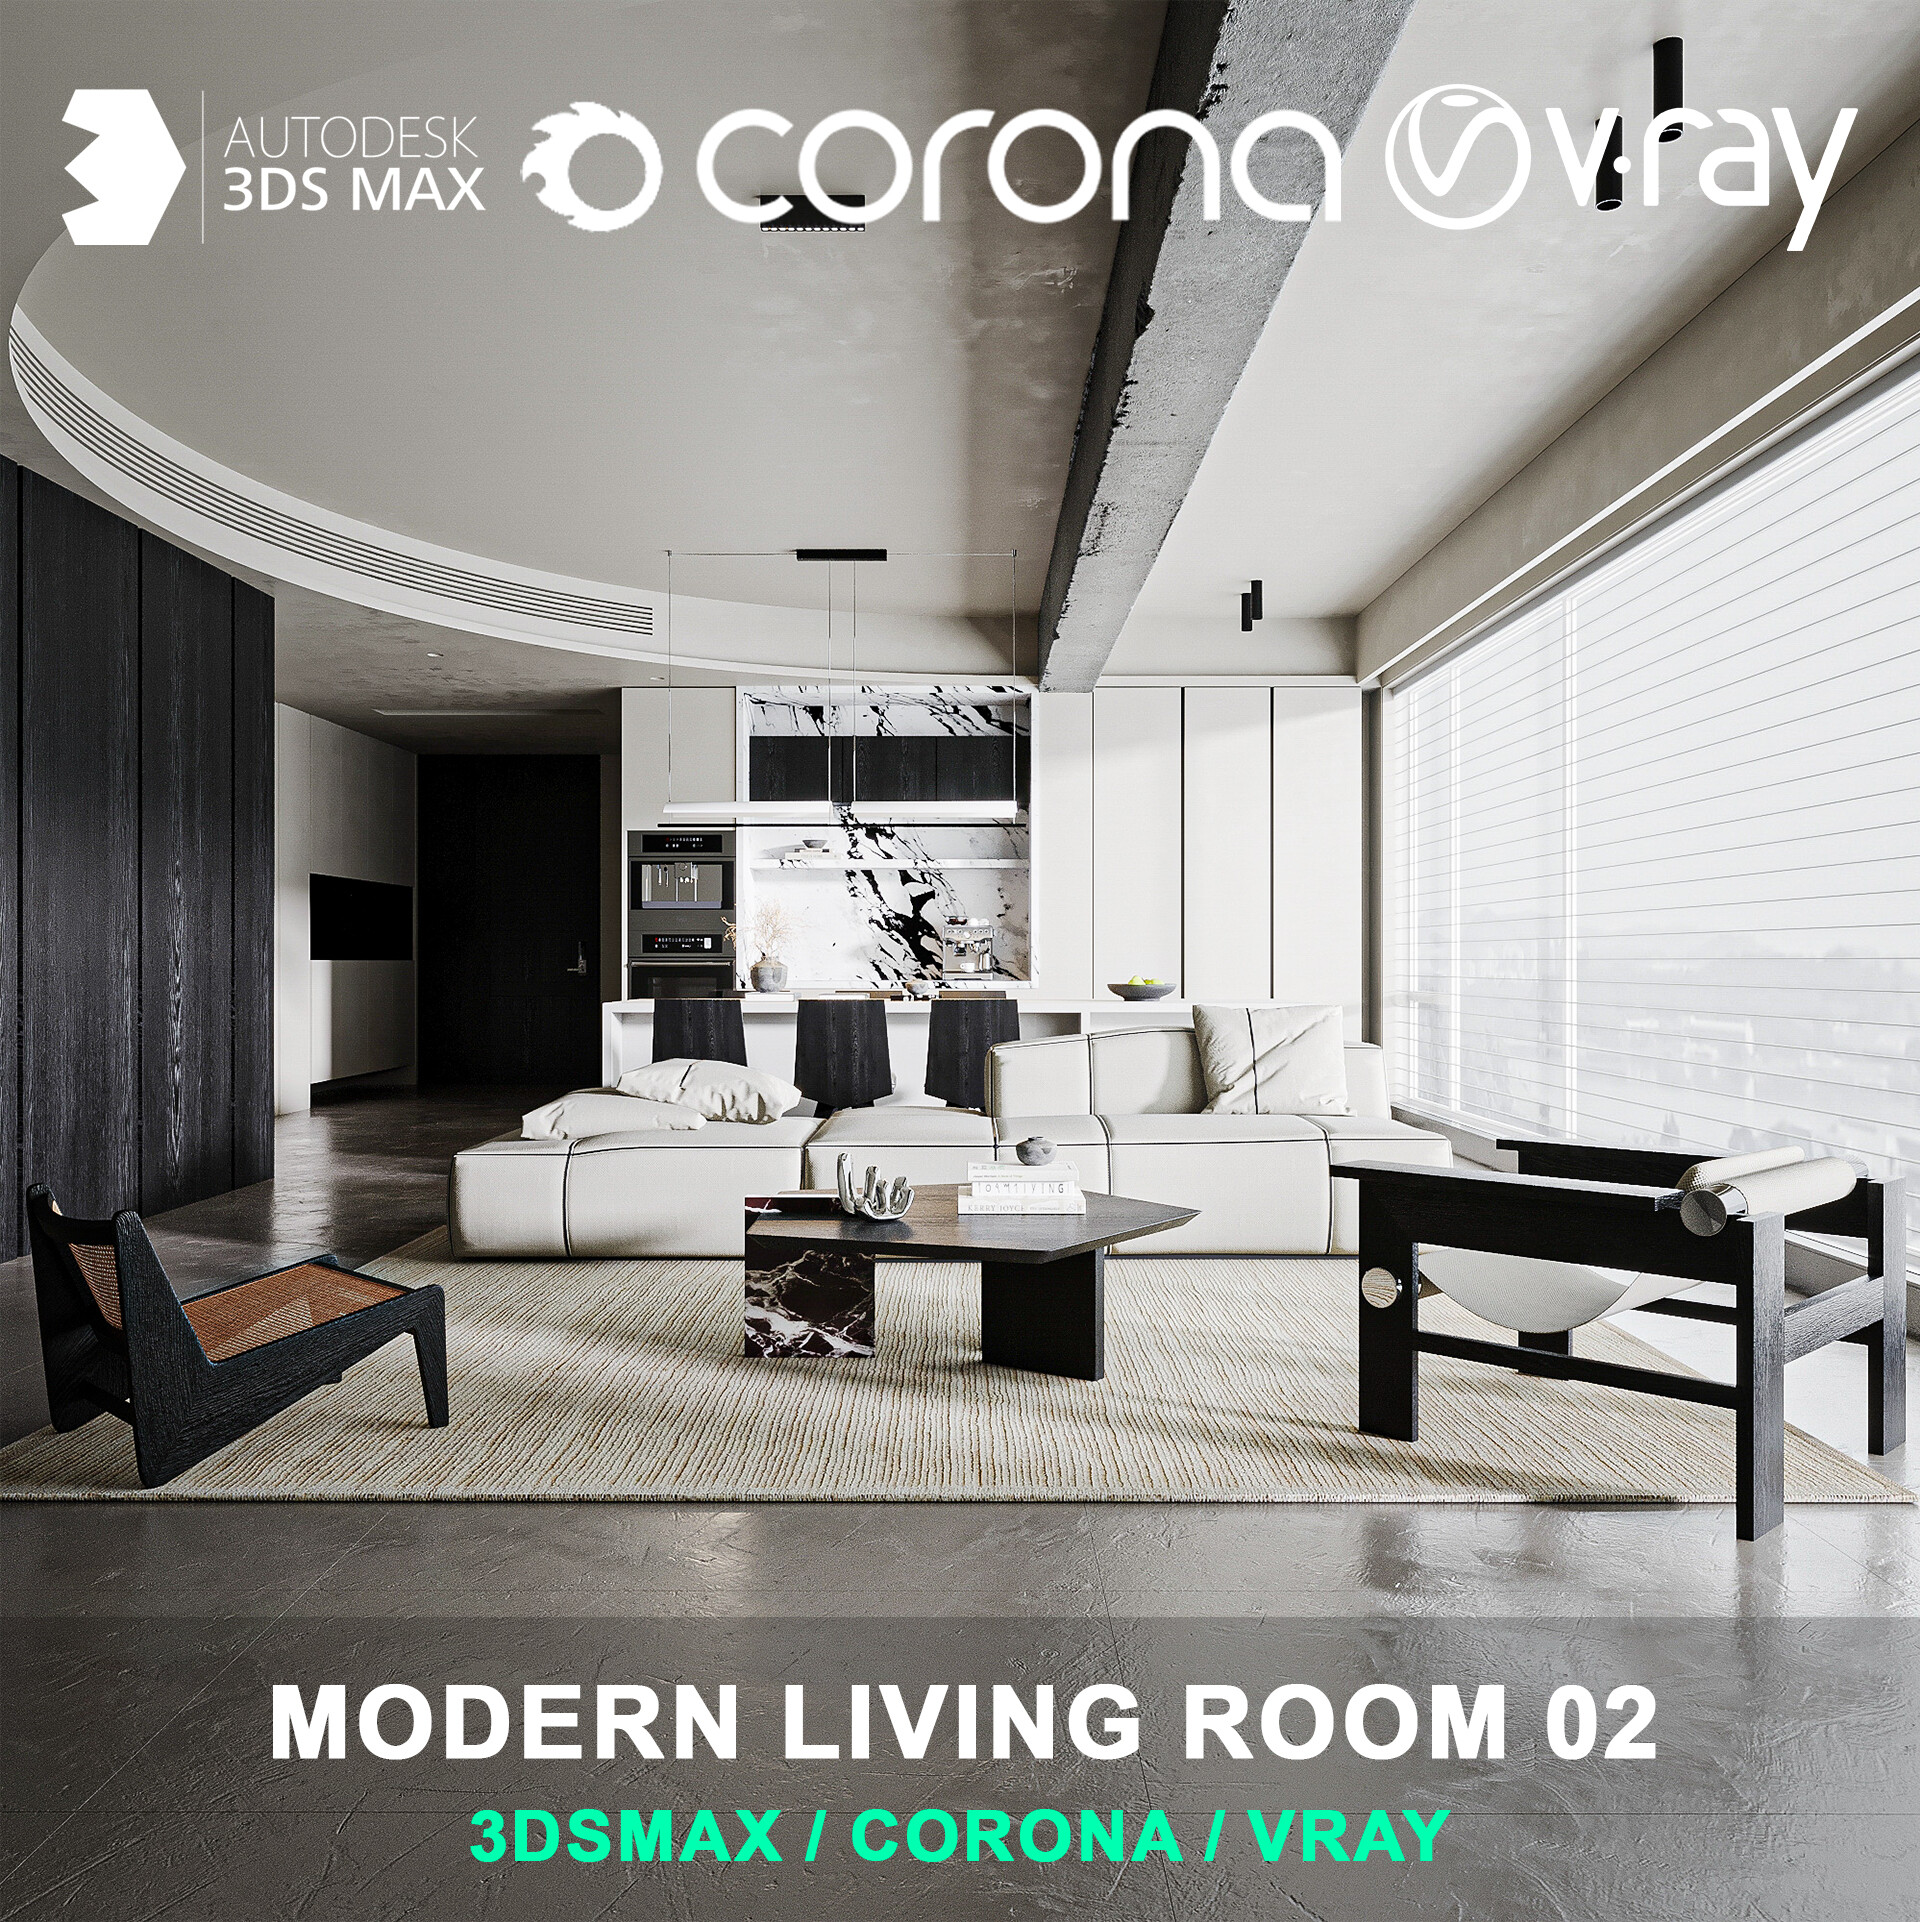 Modern living room 02 for 3DsMax 